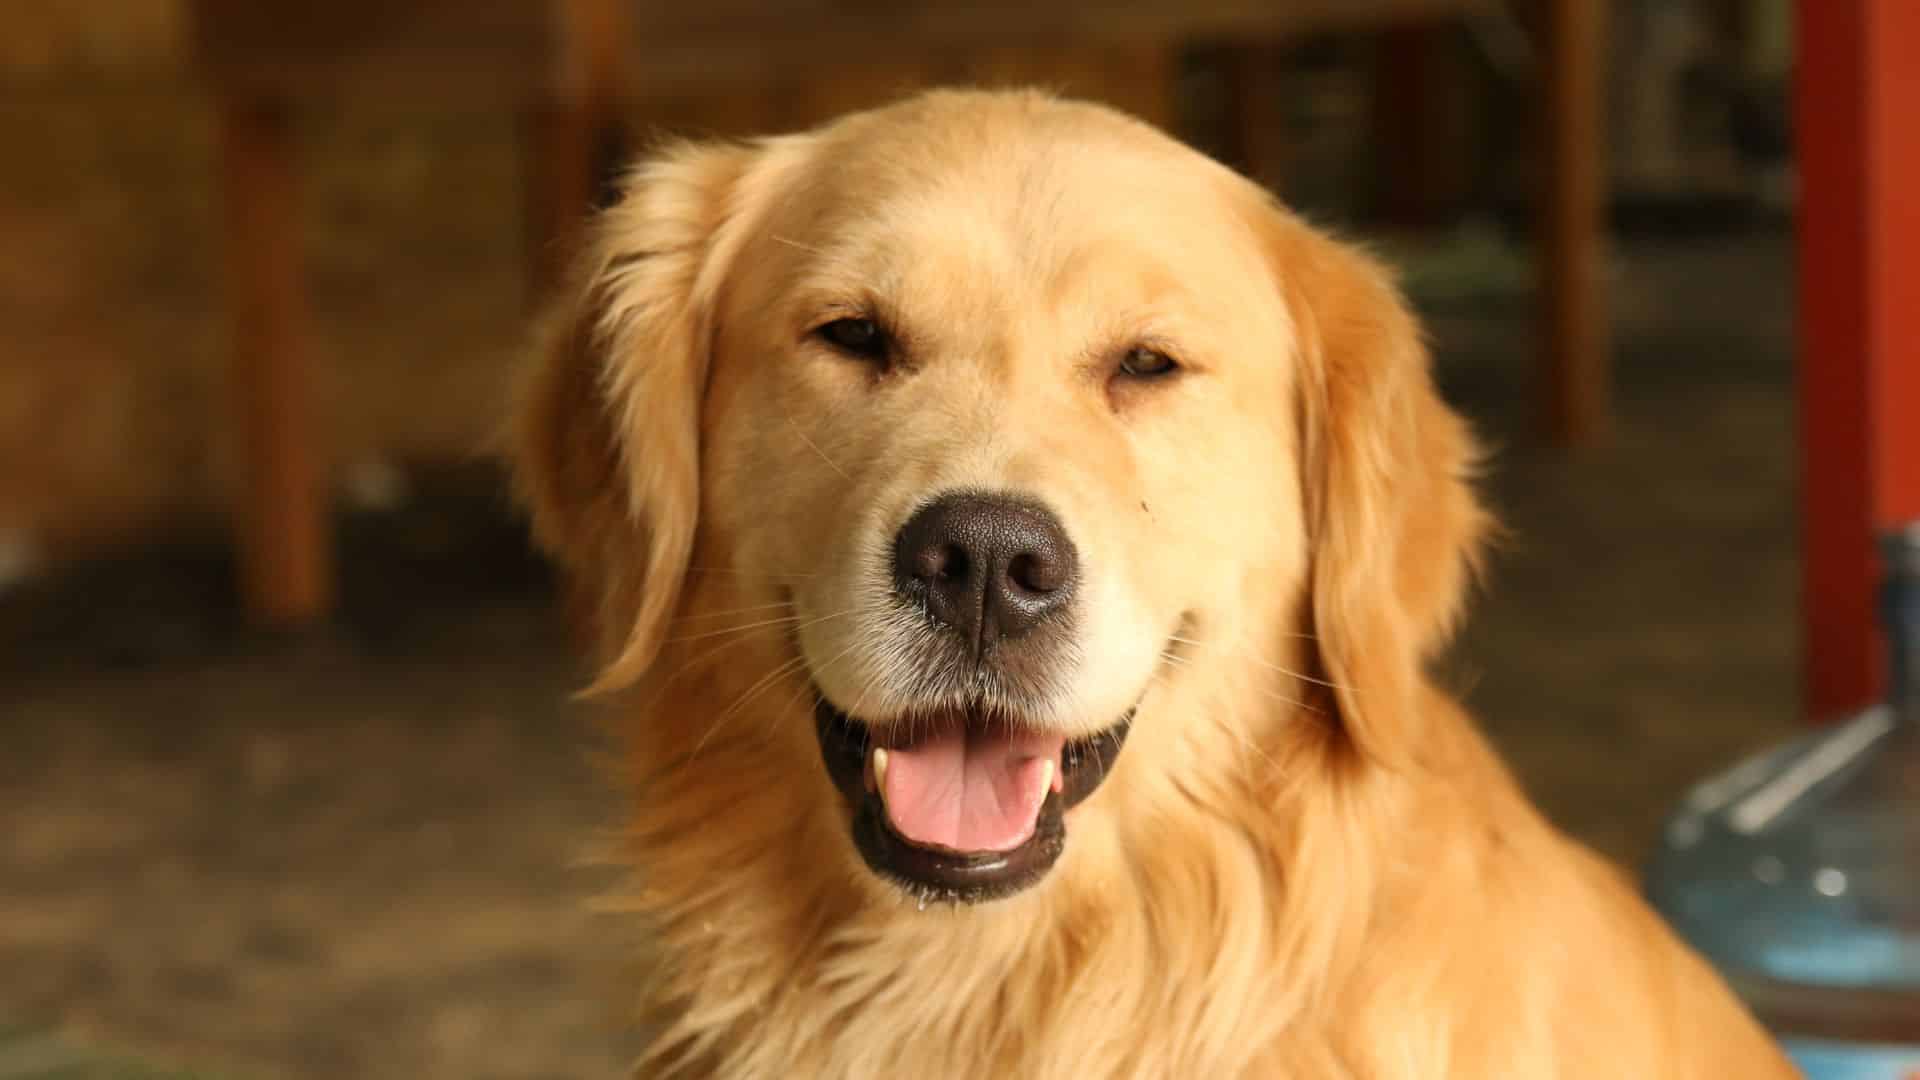 Os golden retrievers são cães inteligentes e versáteis que podem ser treinados para uma variedade de tarefas. Eles são uma ótima escolha para famílias com crianças e outros animais de estimação.